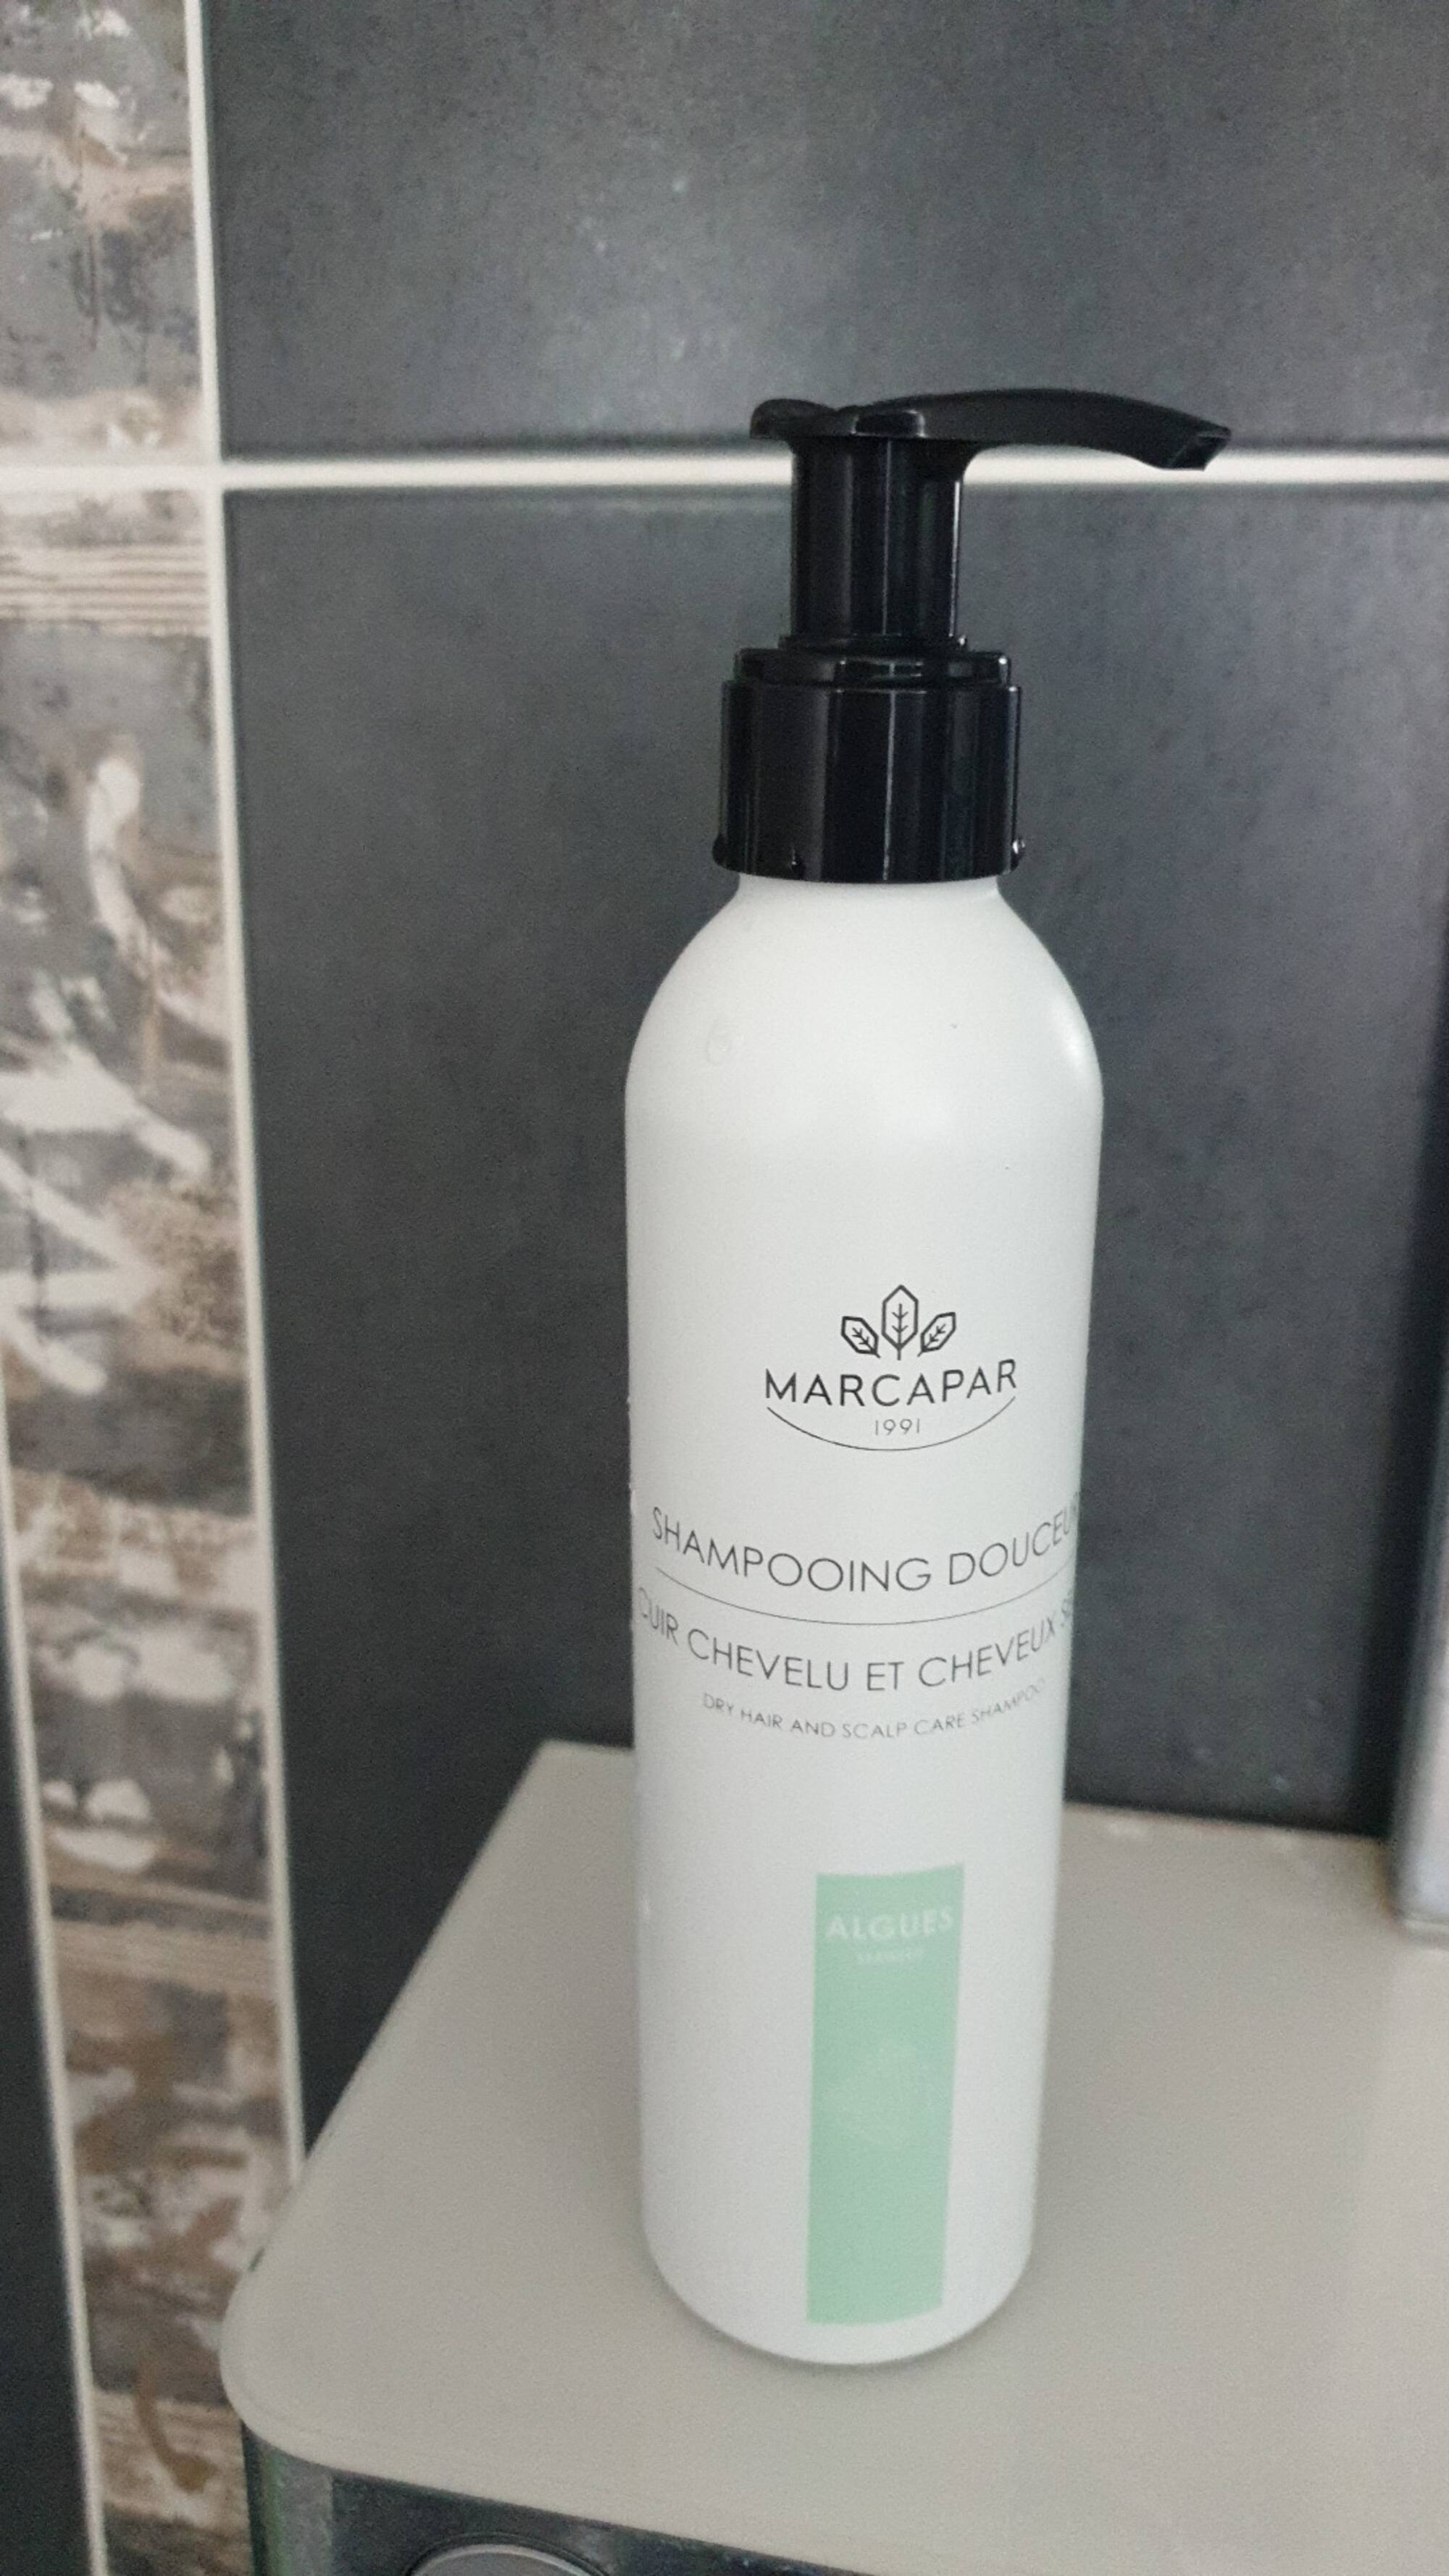 MARCAPAR - Shampooing douce